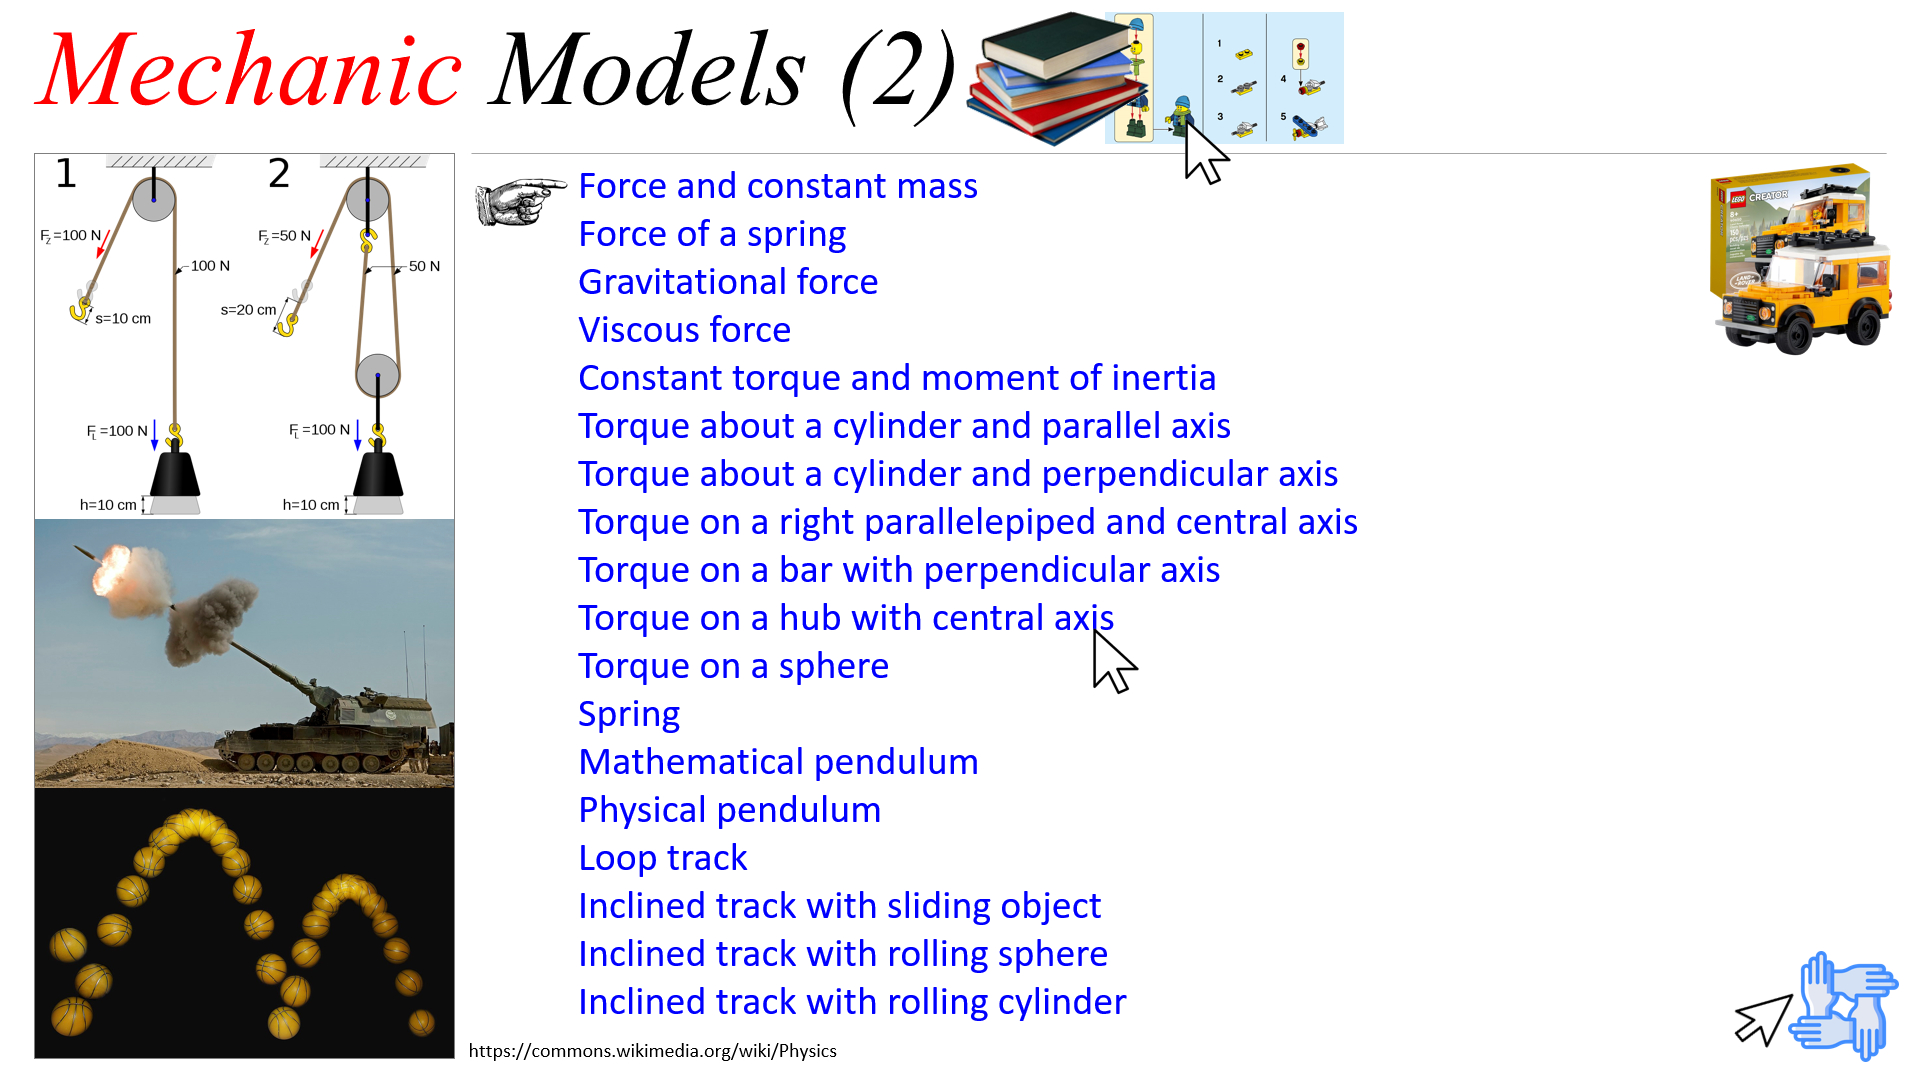 Mechanic Models (2)